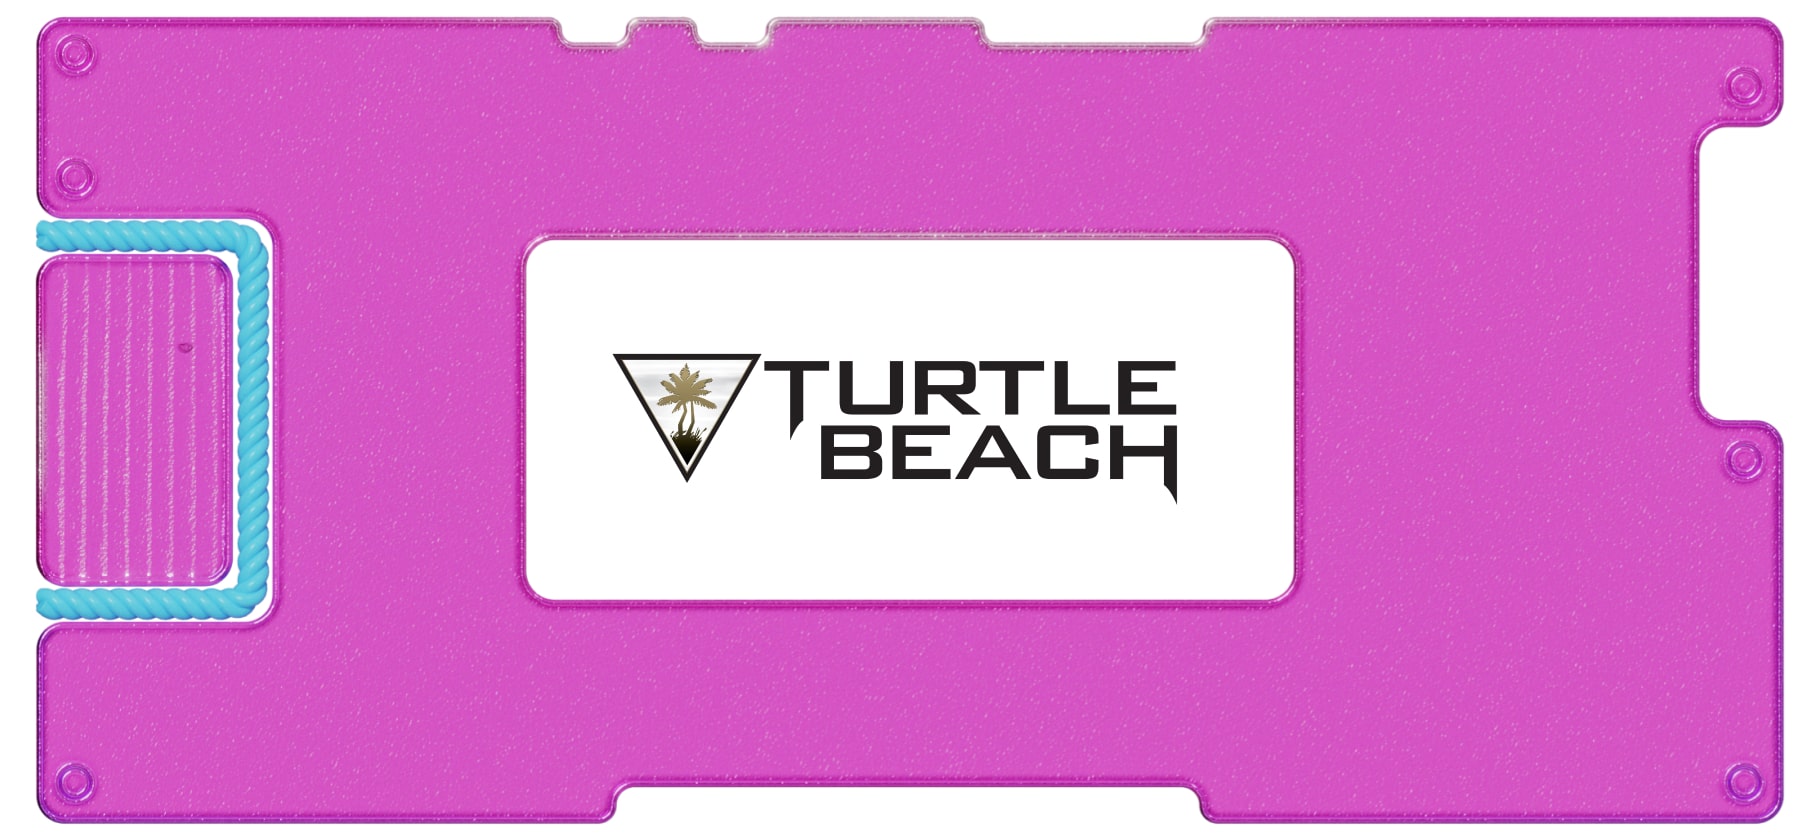 Обзор Turtle Beach: будут ли акции популярней продукции компании